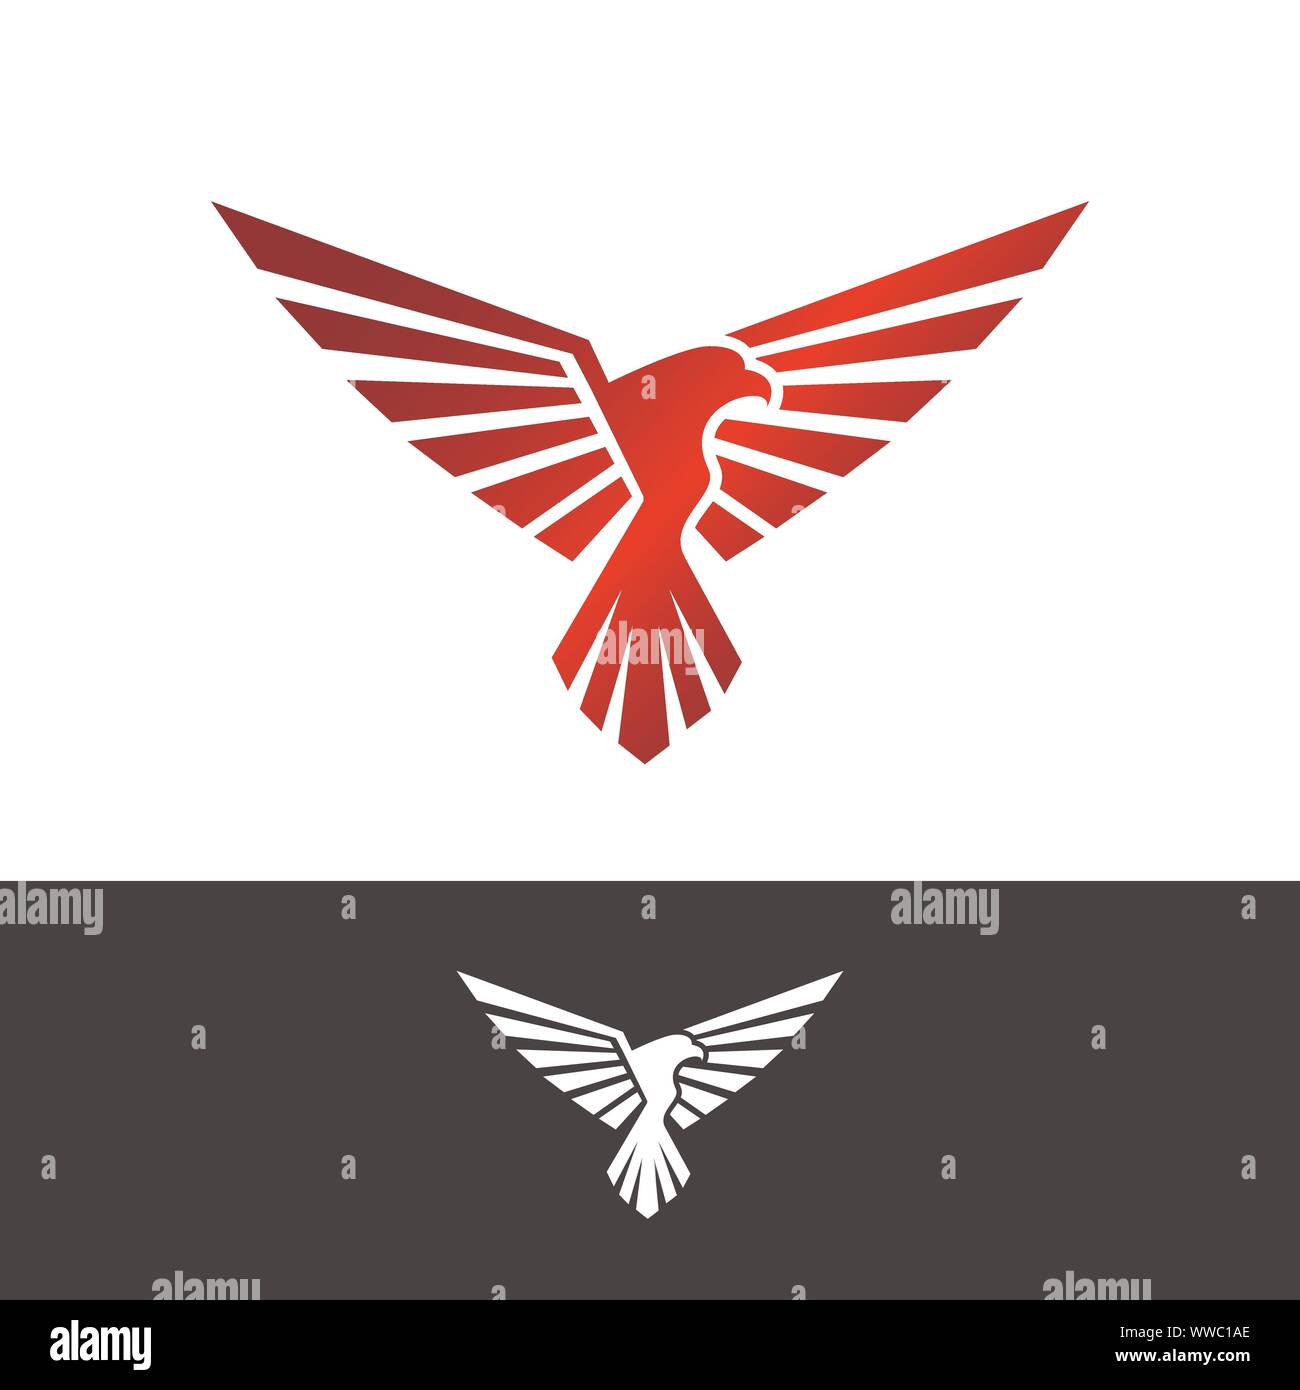 Kreative eagle Head Logo vector Business Konzept Stock Vektor